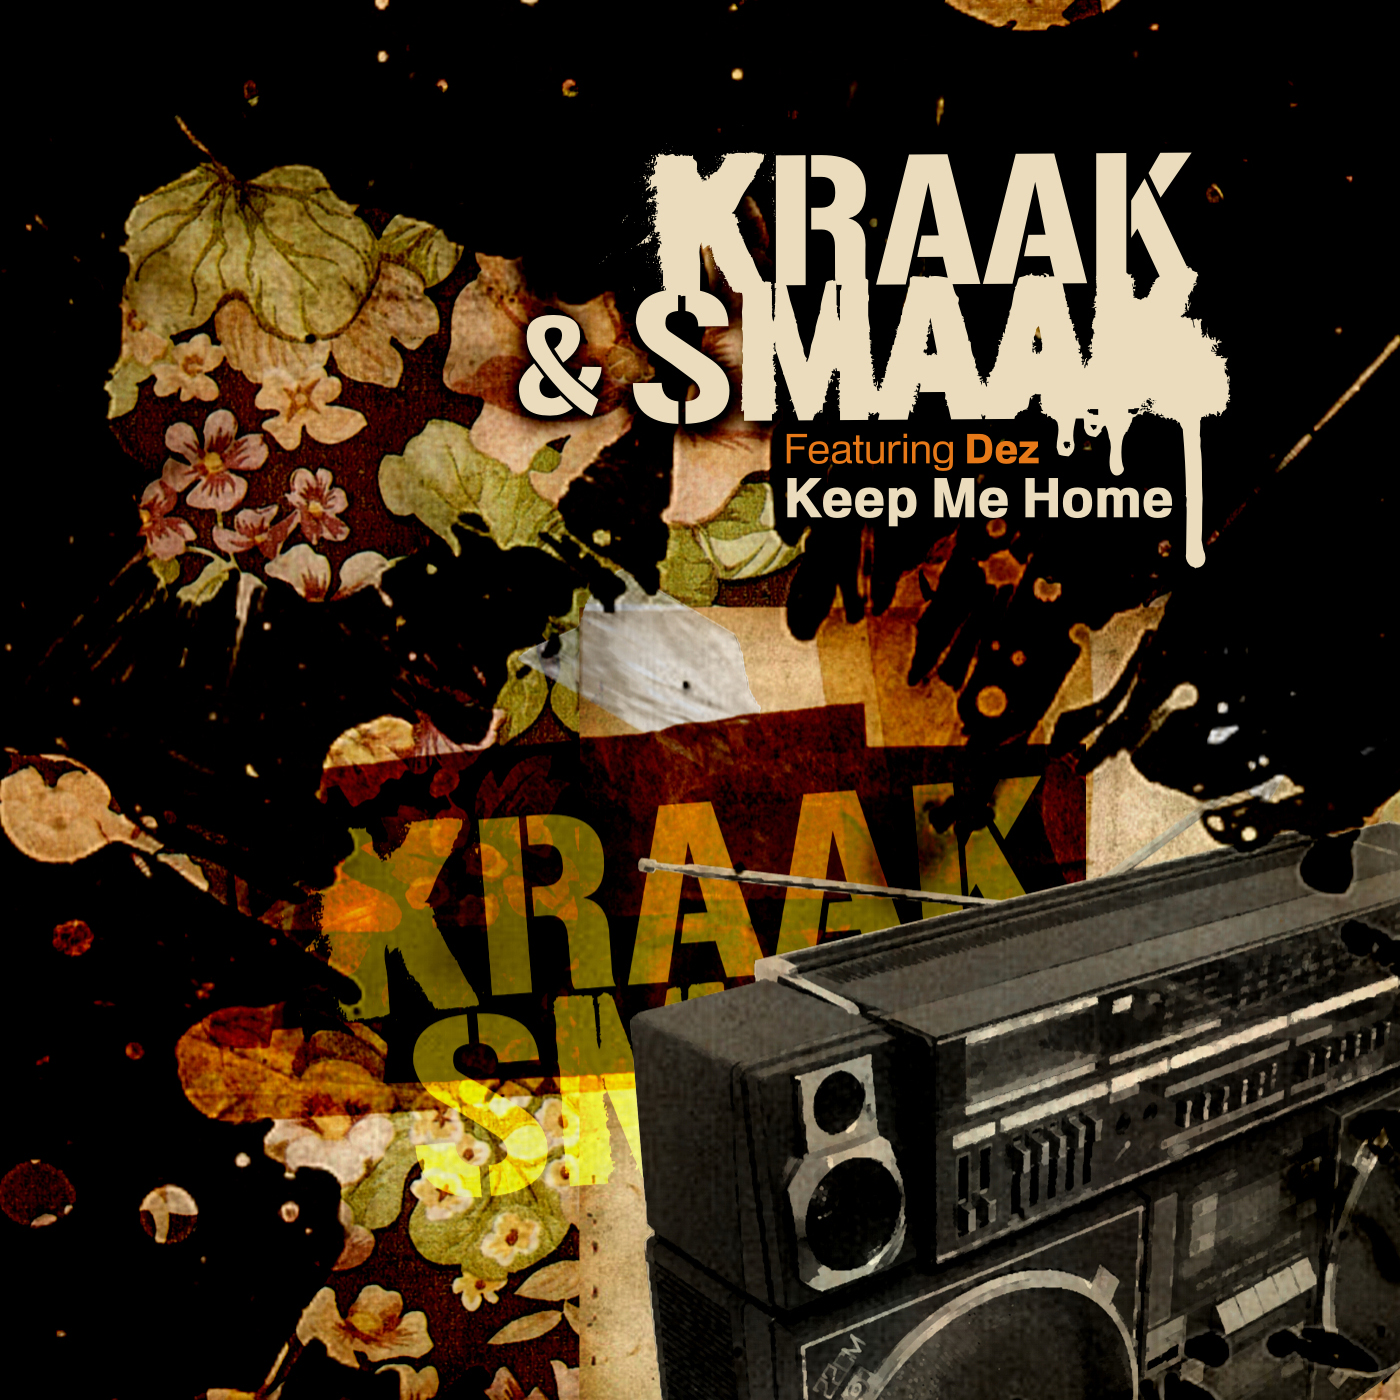 KraakSmaak__Keep me home_300dpi.jpg